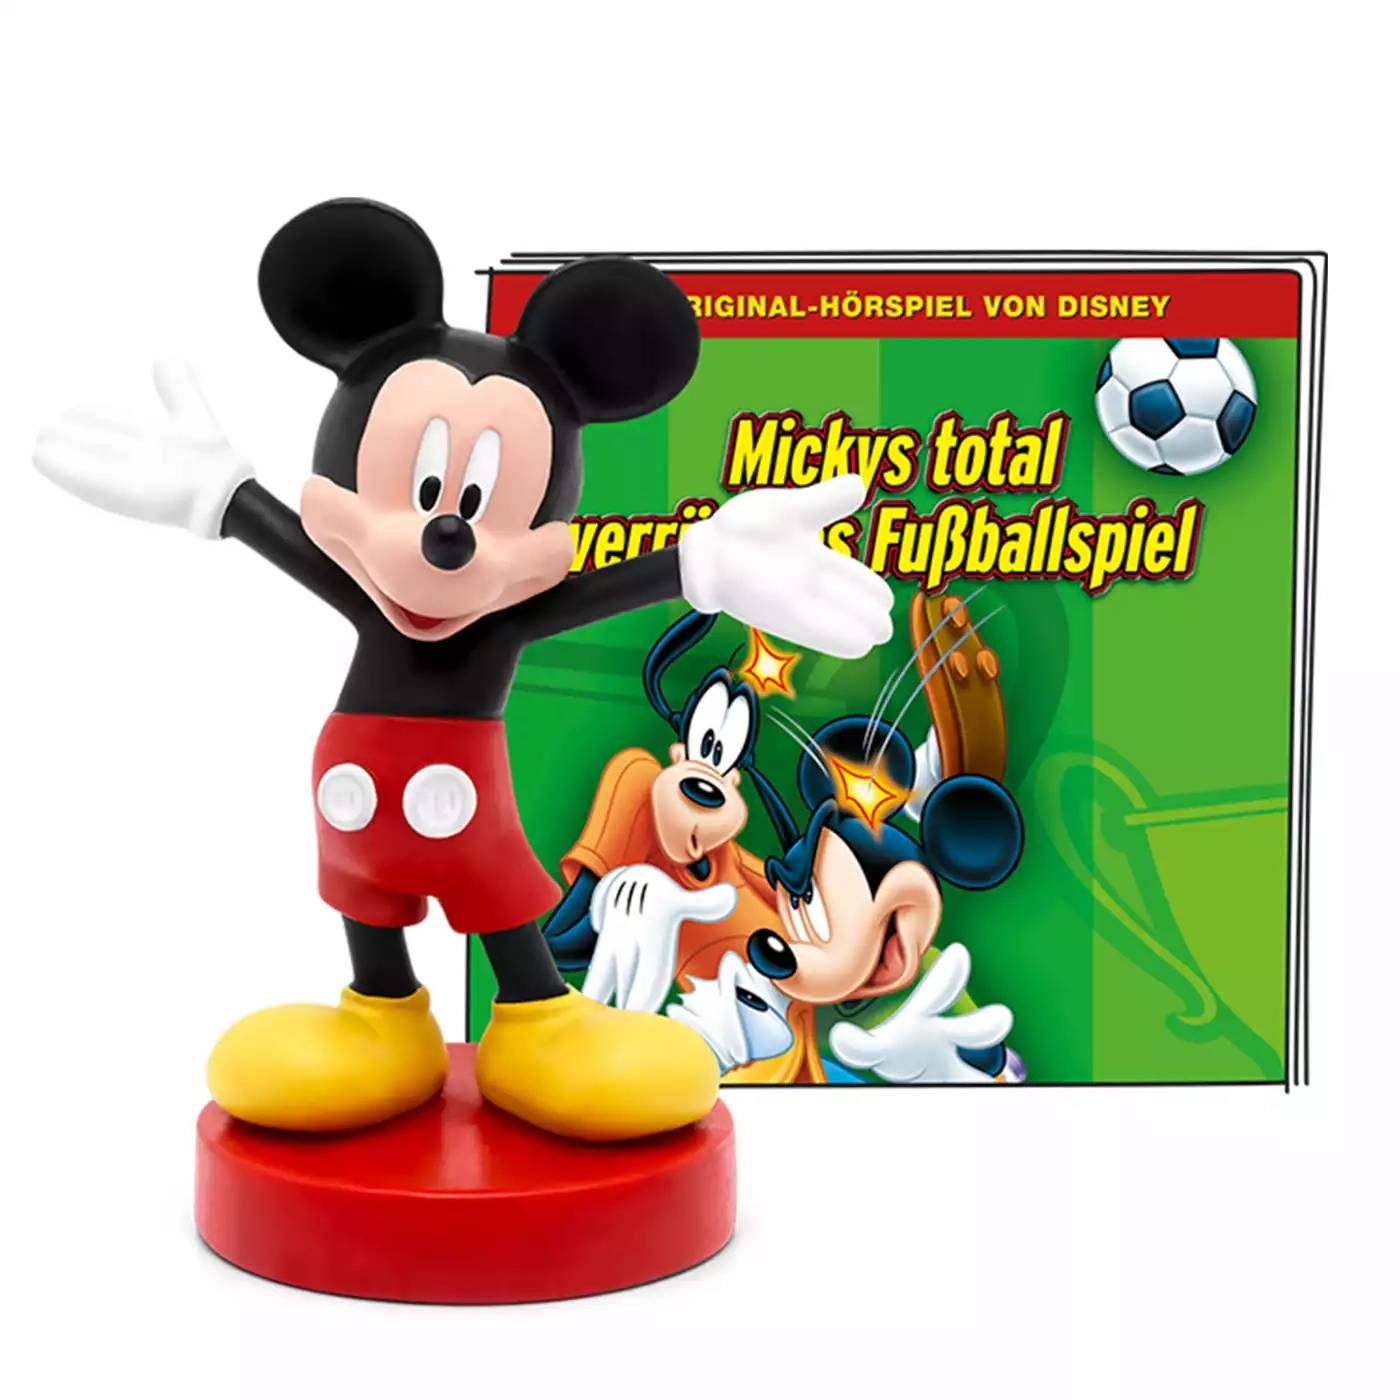 Disney - Mickys total verrücktes Fußballspiel tonies Schwarz 2000581064307 1